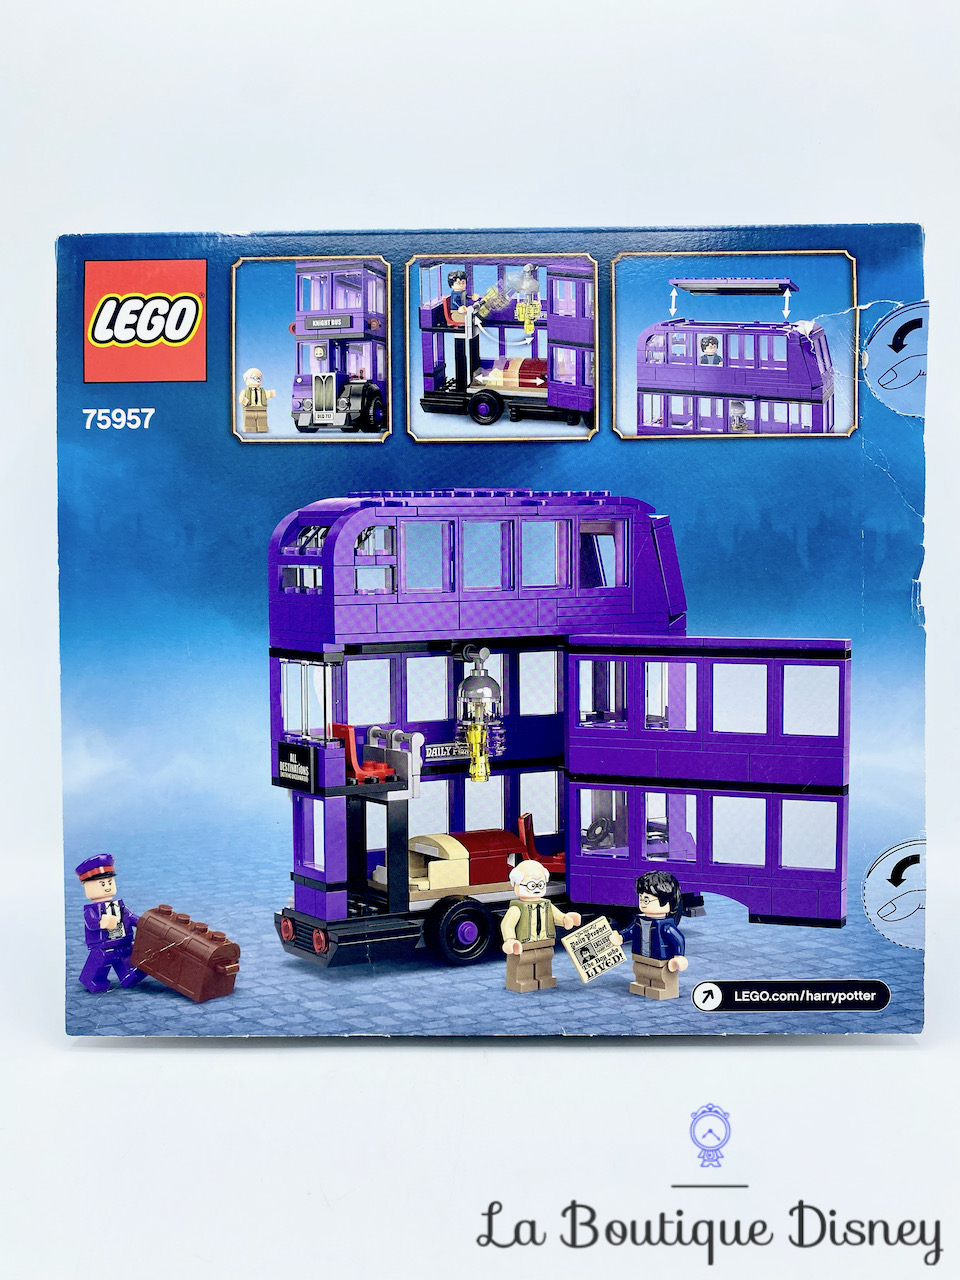 jouet-lego-75957-le-magicobus-harry-potter-bus-violet-1